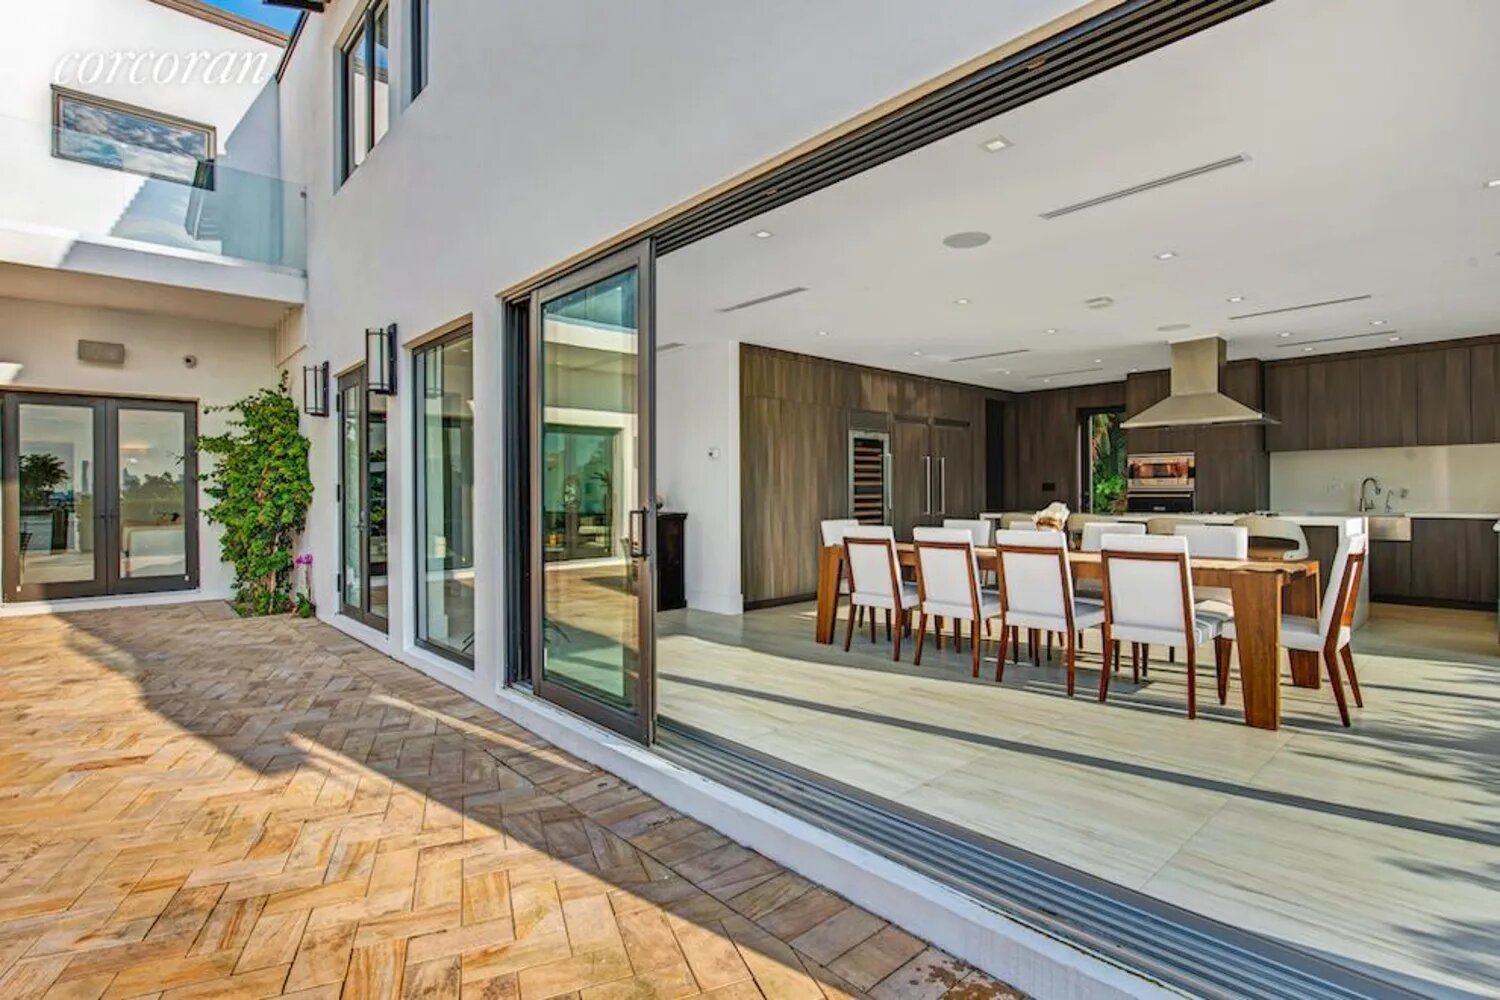 Casa Jennifer Lopez y Ben Affleck en Miami exterior con acceso a cocina